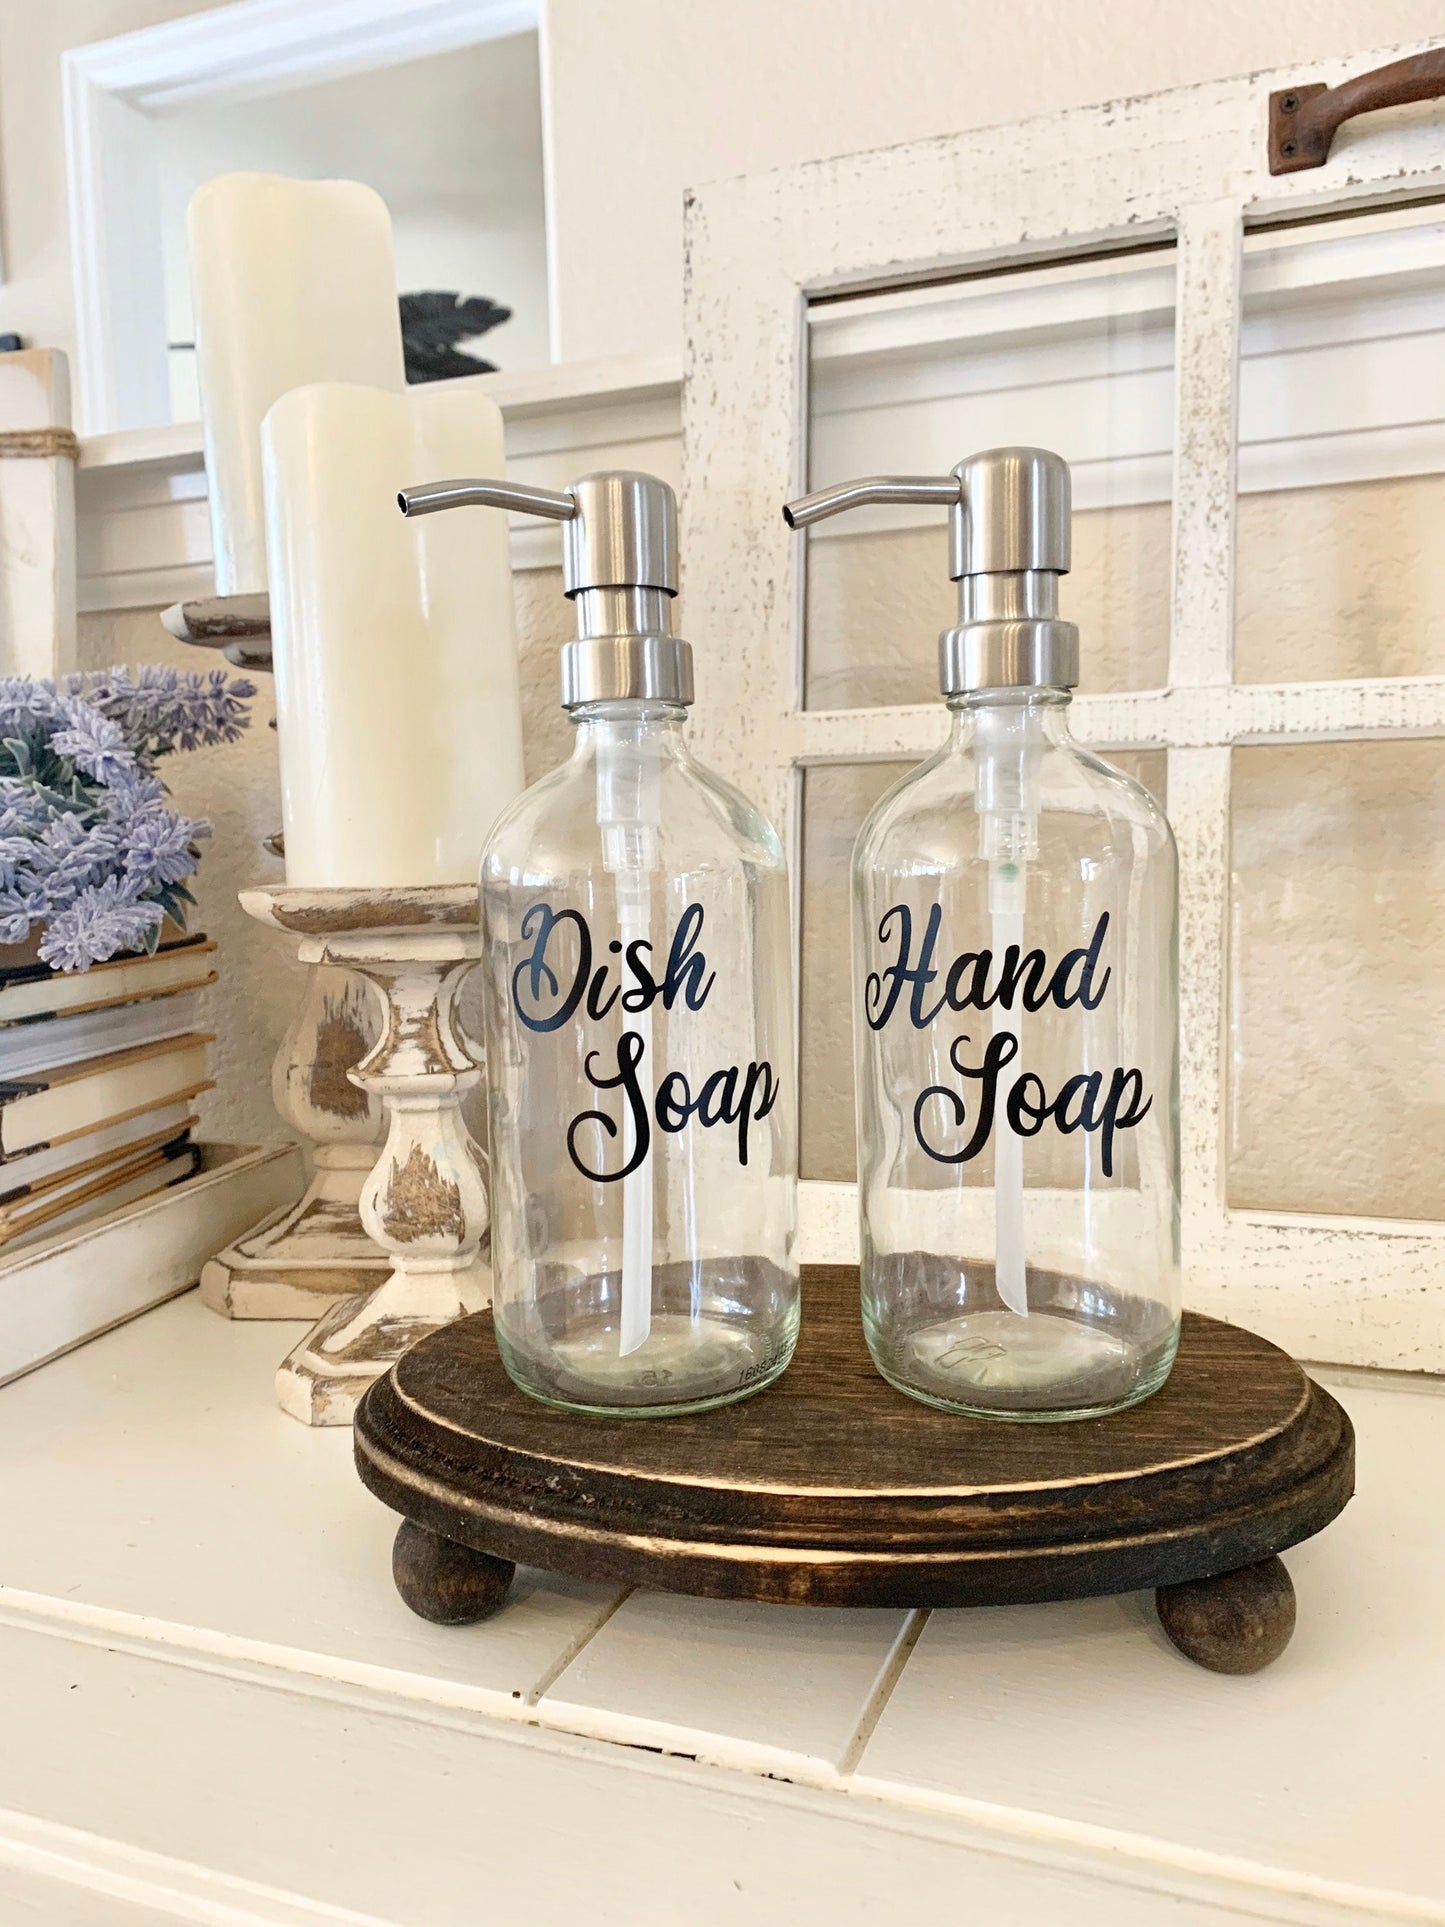 Kitchen Soap Dispenser, Farmhouse Kitchen Decor, Dish Soap Dispenser, Hand Soap Dispenser, Painted Mason Jar Soap Dispenser, Farmhouse Decor